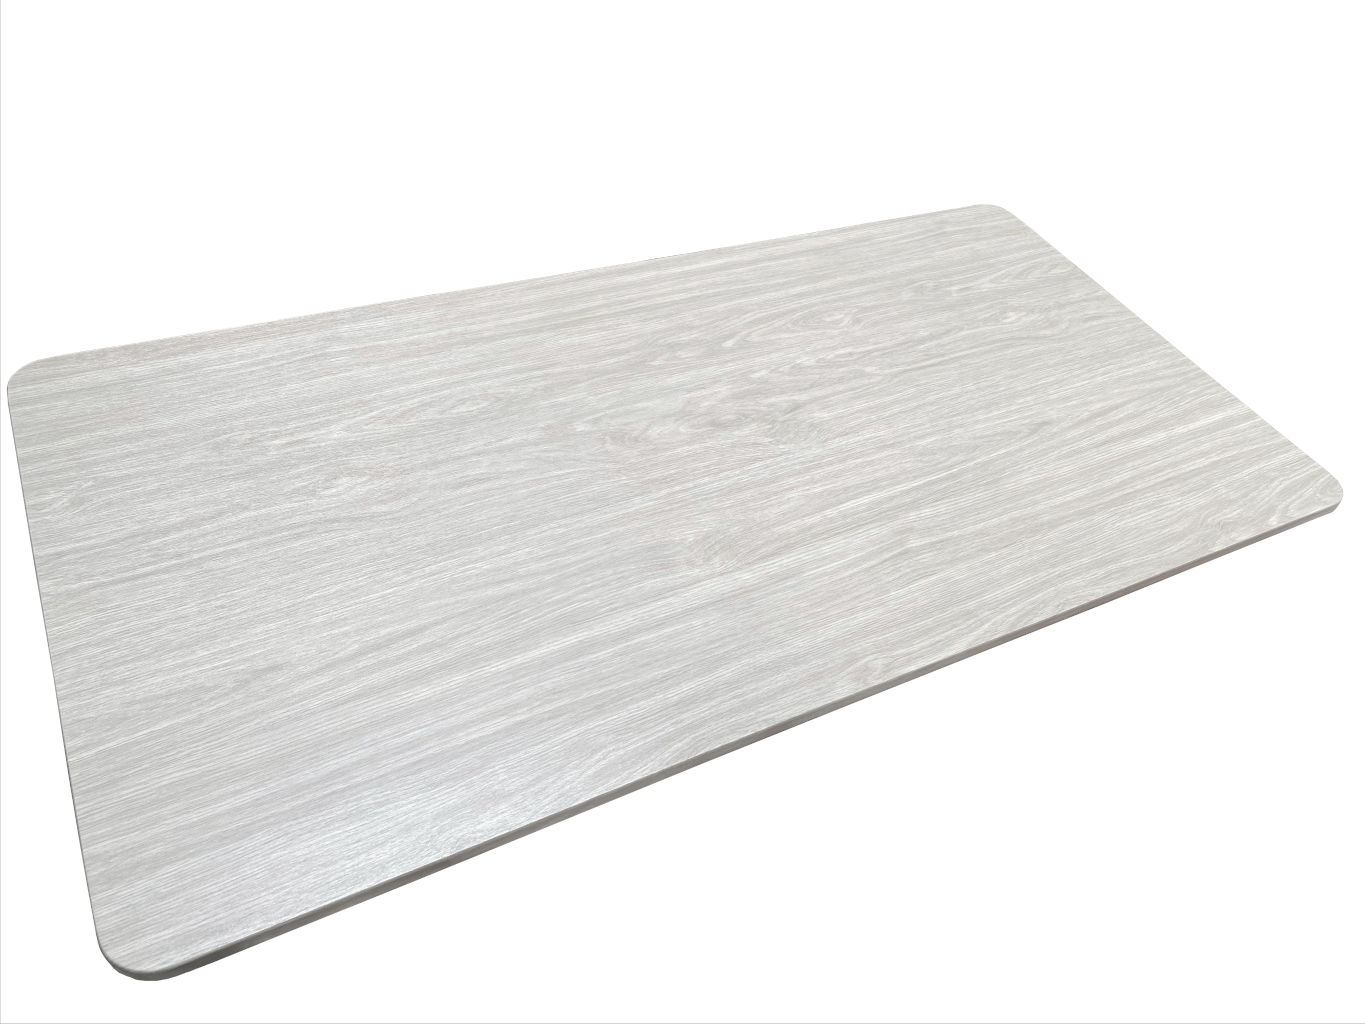 Tischplatten Verbundholz 1600 mm 800 mm 17 mm stark weisse Eiche (1 Stück)